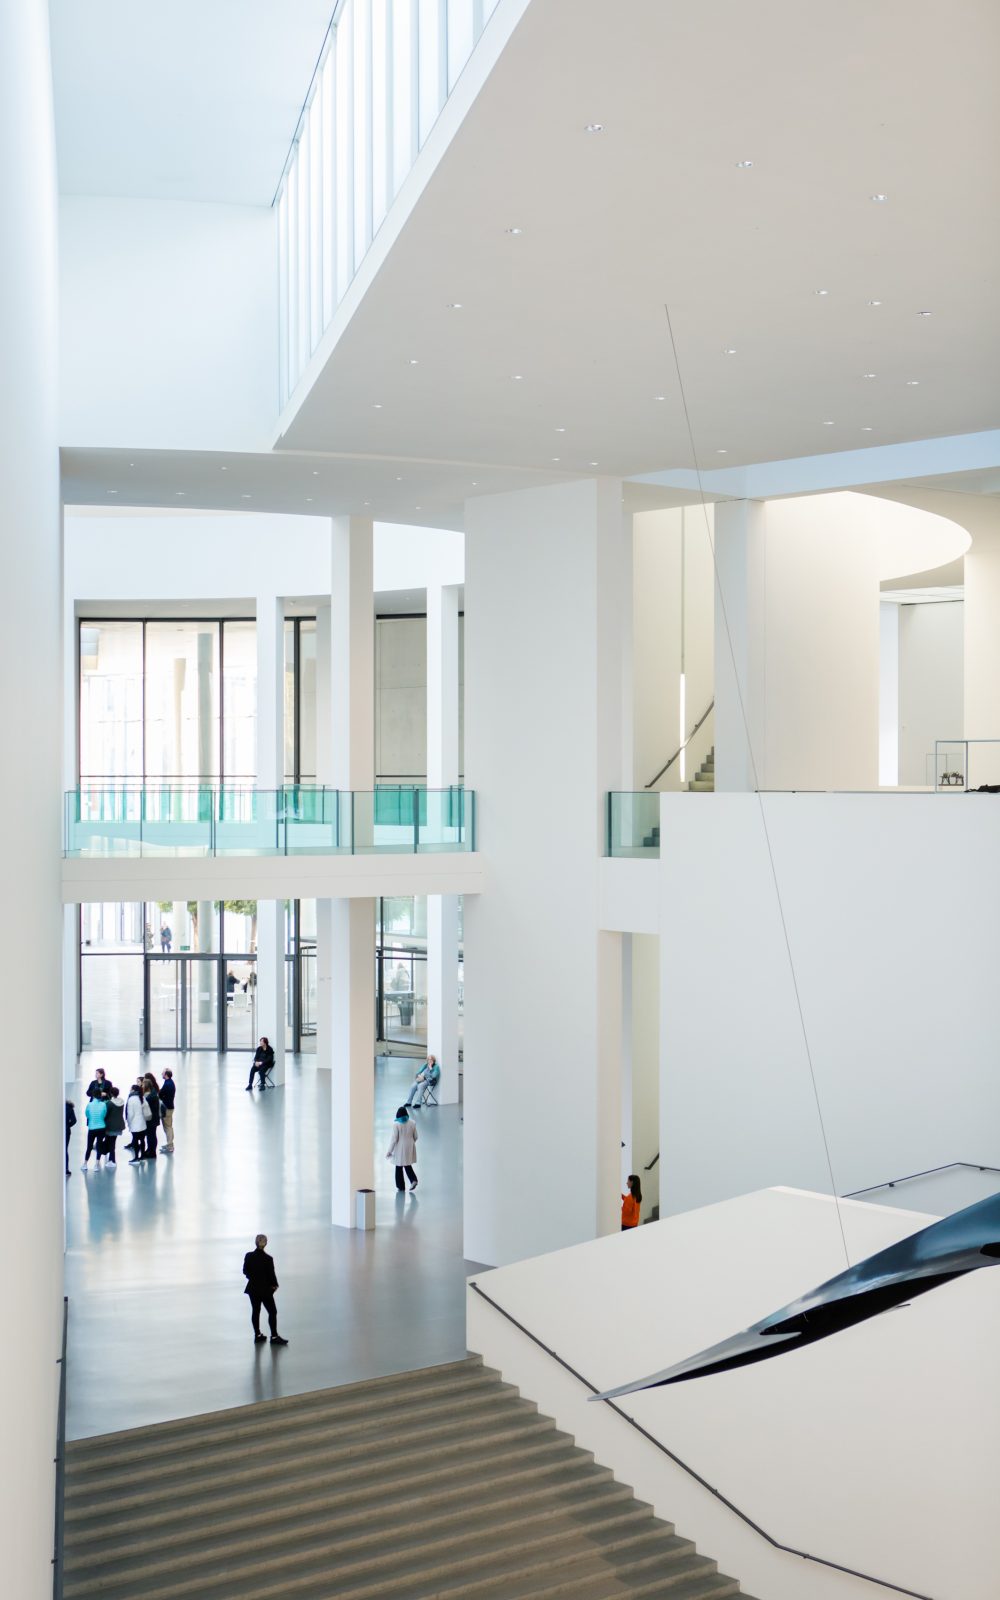 Pinakothek der Moderne Architekturaufnahme. Ein großer heller Raum mit Treppen und Blick auf die Rotunde